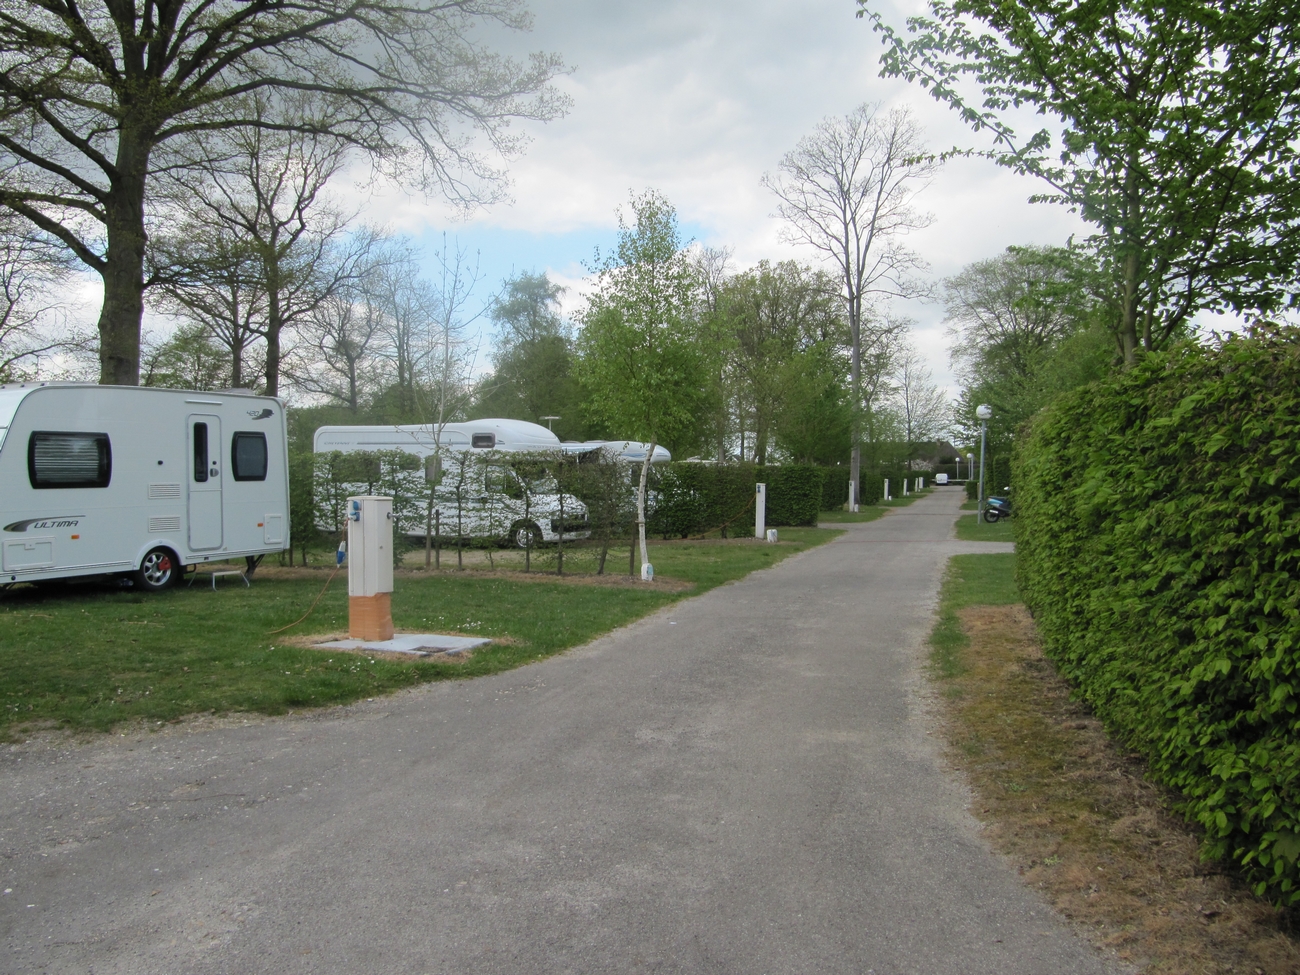 Location emplacement camping au camping de la Forêt de Jumièges, camping 4 étoiles, hôtellerie de plein air avec piscine couverte en Seine Maritime, proche de Rouen